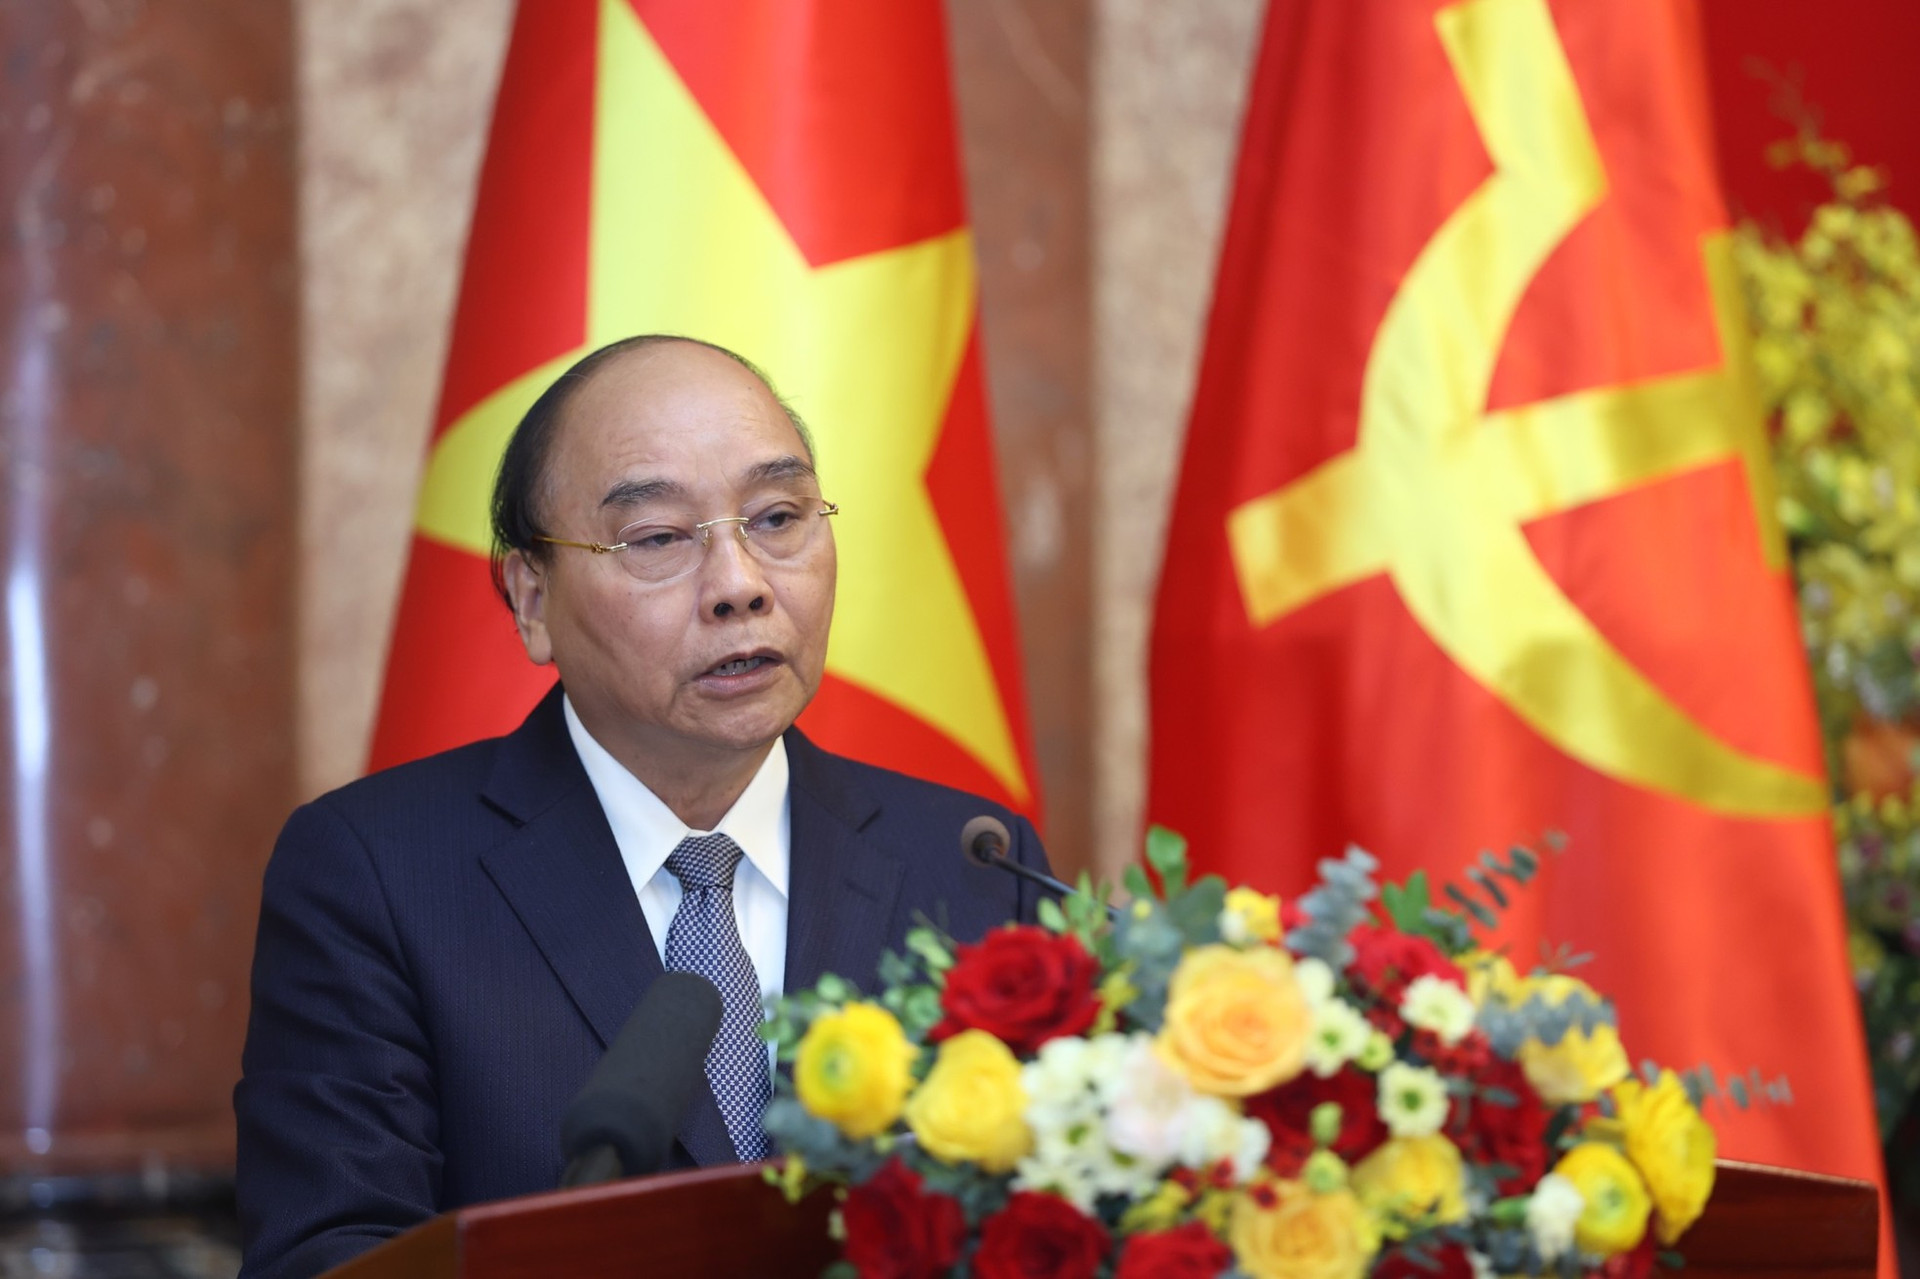 Nguyên Chủ tịch nước Nguyễn Xuân Phúc: 'Tôi chịu trách nhiệm chính trị của người đứng đầu' ảnh 1